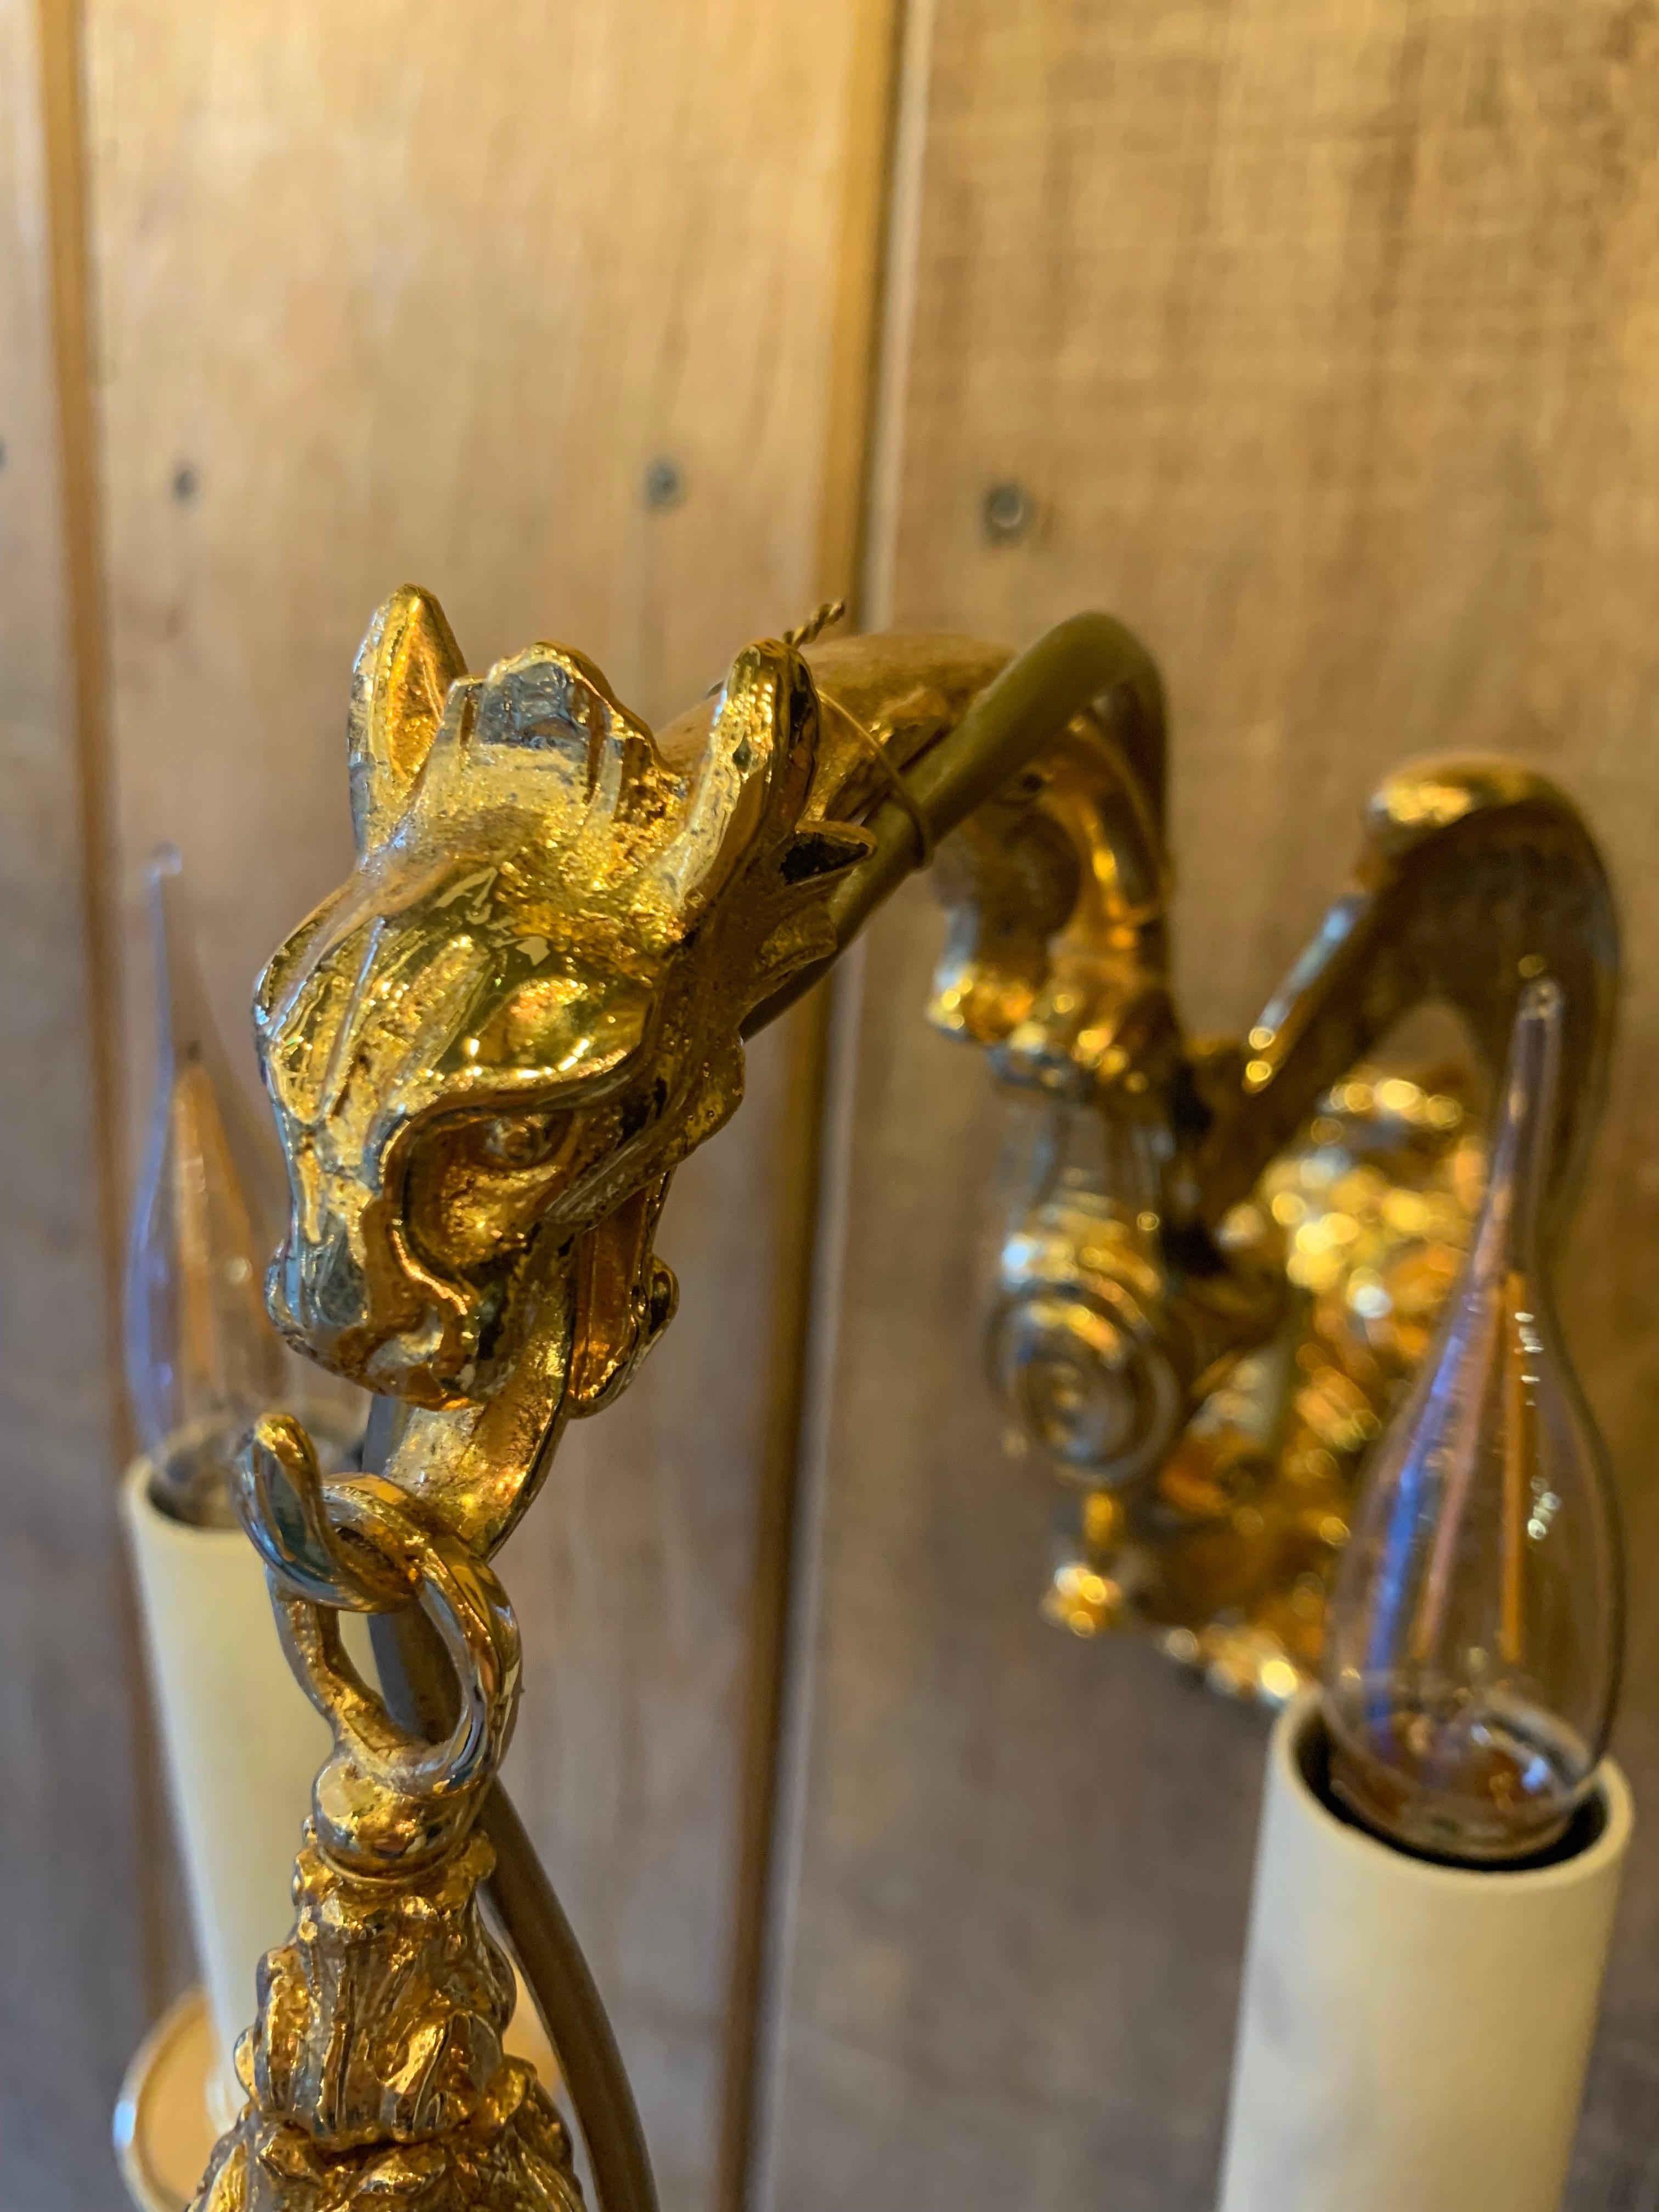 Petite applique dragon en bronze doré 18k avec 5 bras de lumières dans le style Louis XV.

Nous avons une paire en stock mais nous pouvons les fabriquer sur mesure et dans d'autres finitions telles que le bronze antique, l'or 24k, l'argent, le